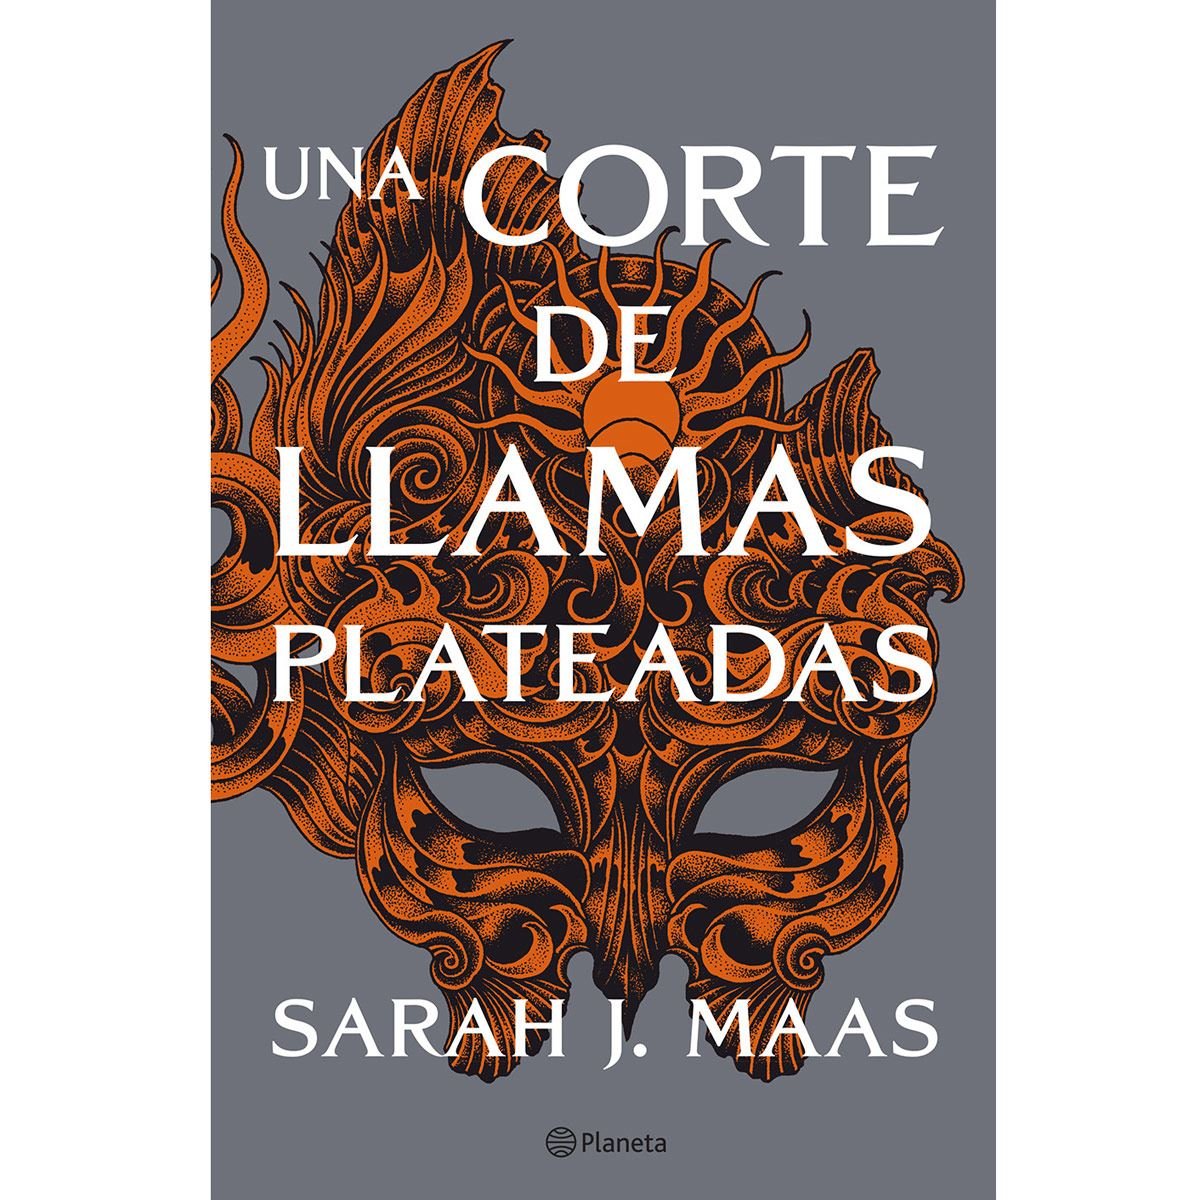 Una corte de llamas plateadas' de Sarah J. Maas llega a español el